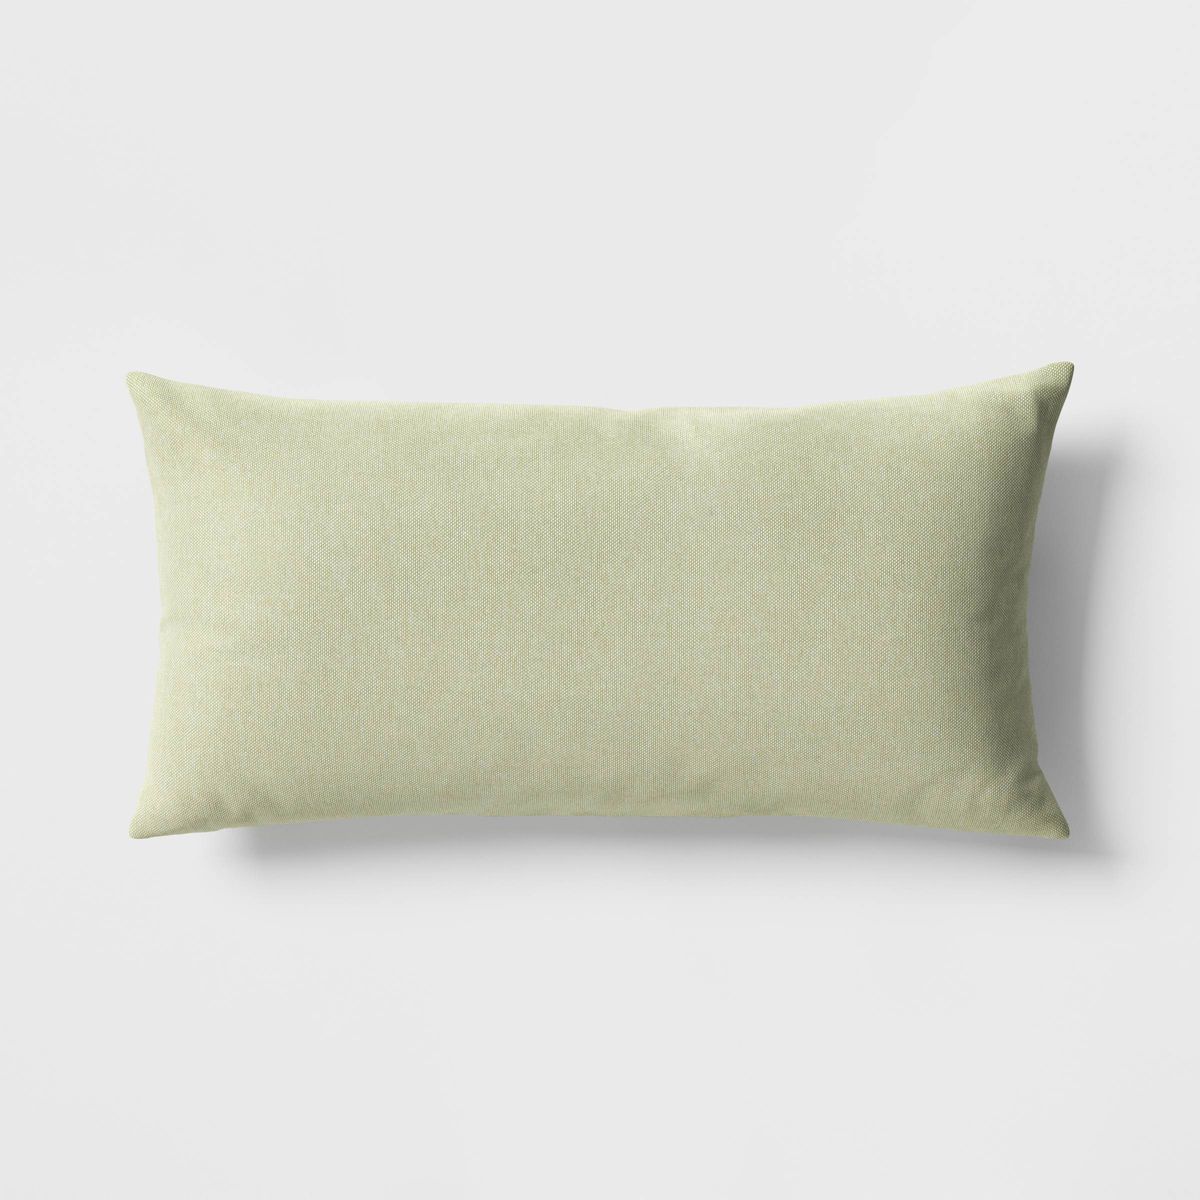 12"x24" Solid Woven Rectangular Outdoor Lumbar Pillow - Threshold™ | Target